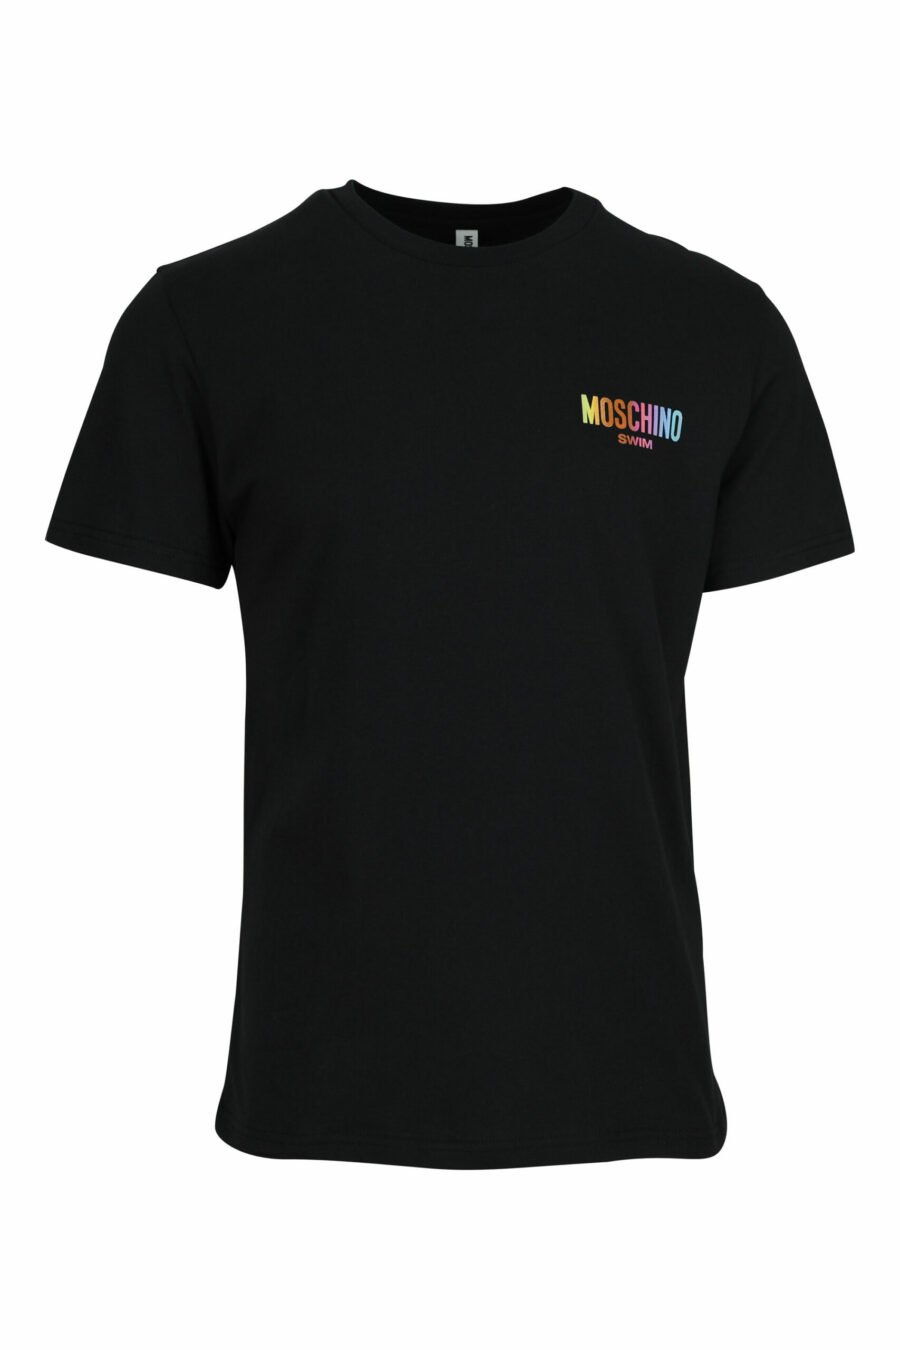 Camiseta negra con minilogo multicolor - 667113672588 scaled